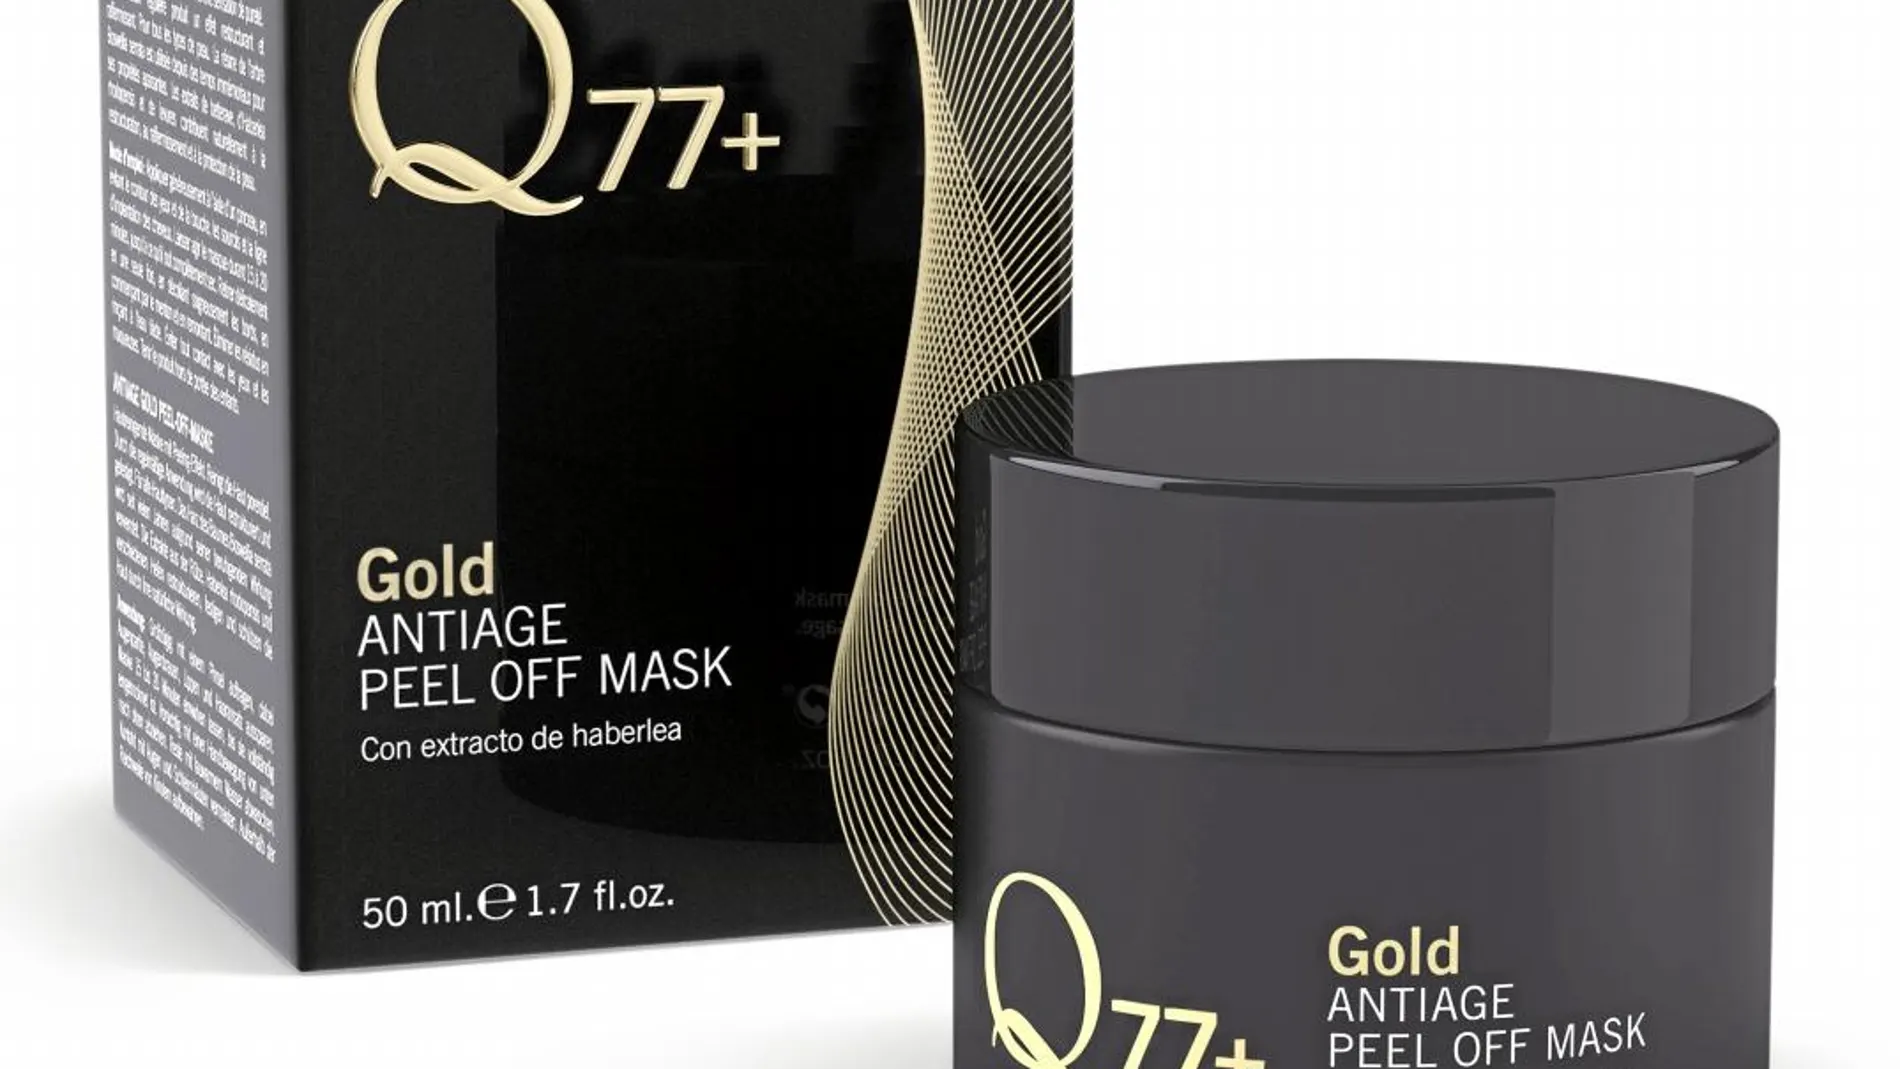 Gold Peel Off Mask de Q77+